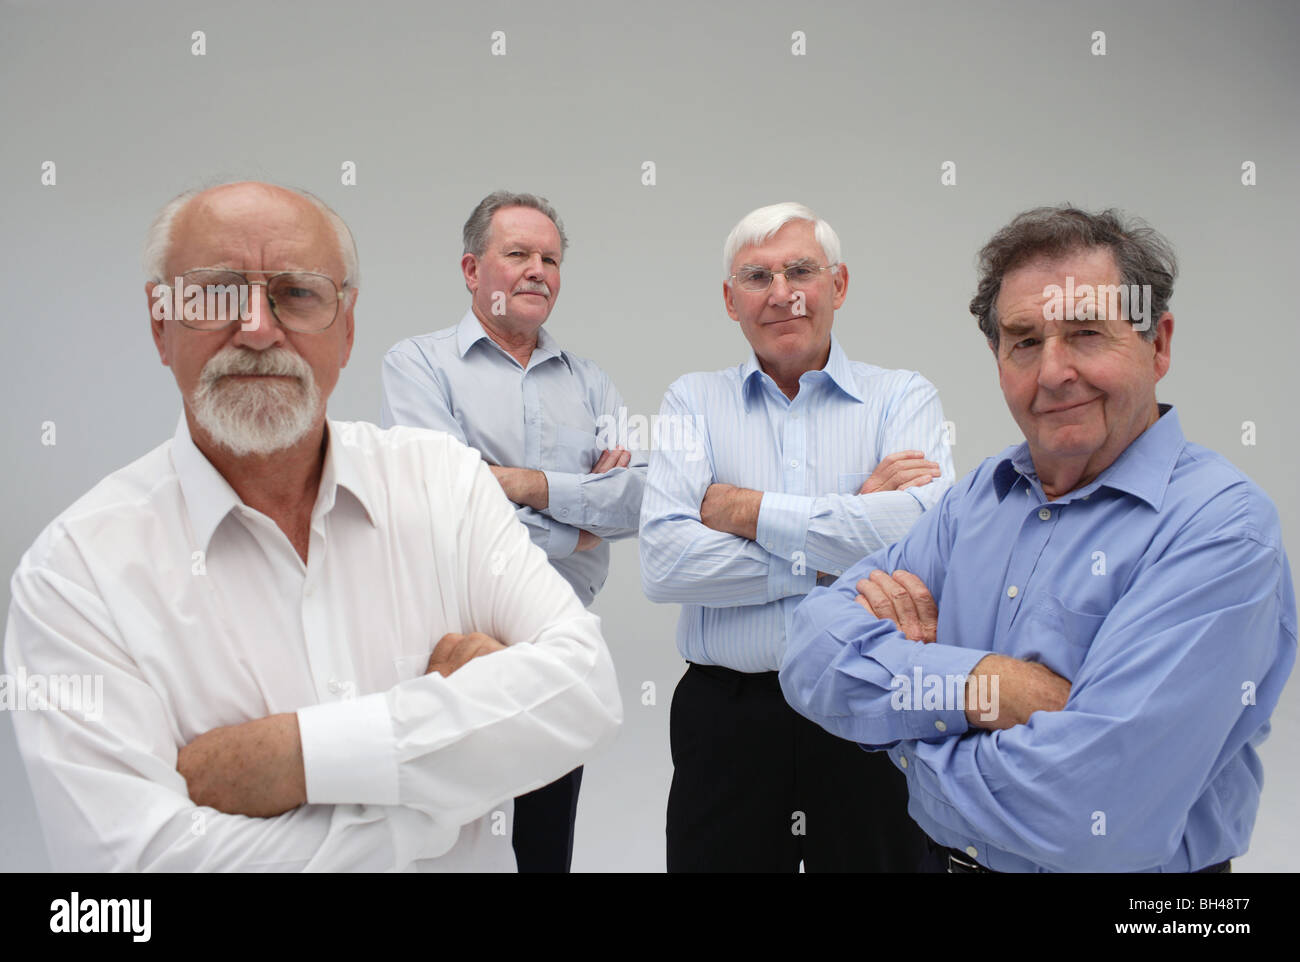 Vier leitende Geschäftsleute stehen mit Armen gefaltet, Lächeln Stockfoto